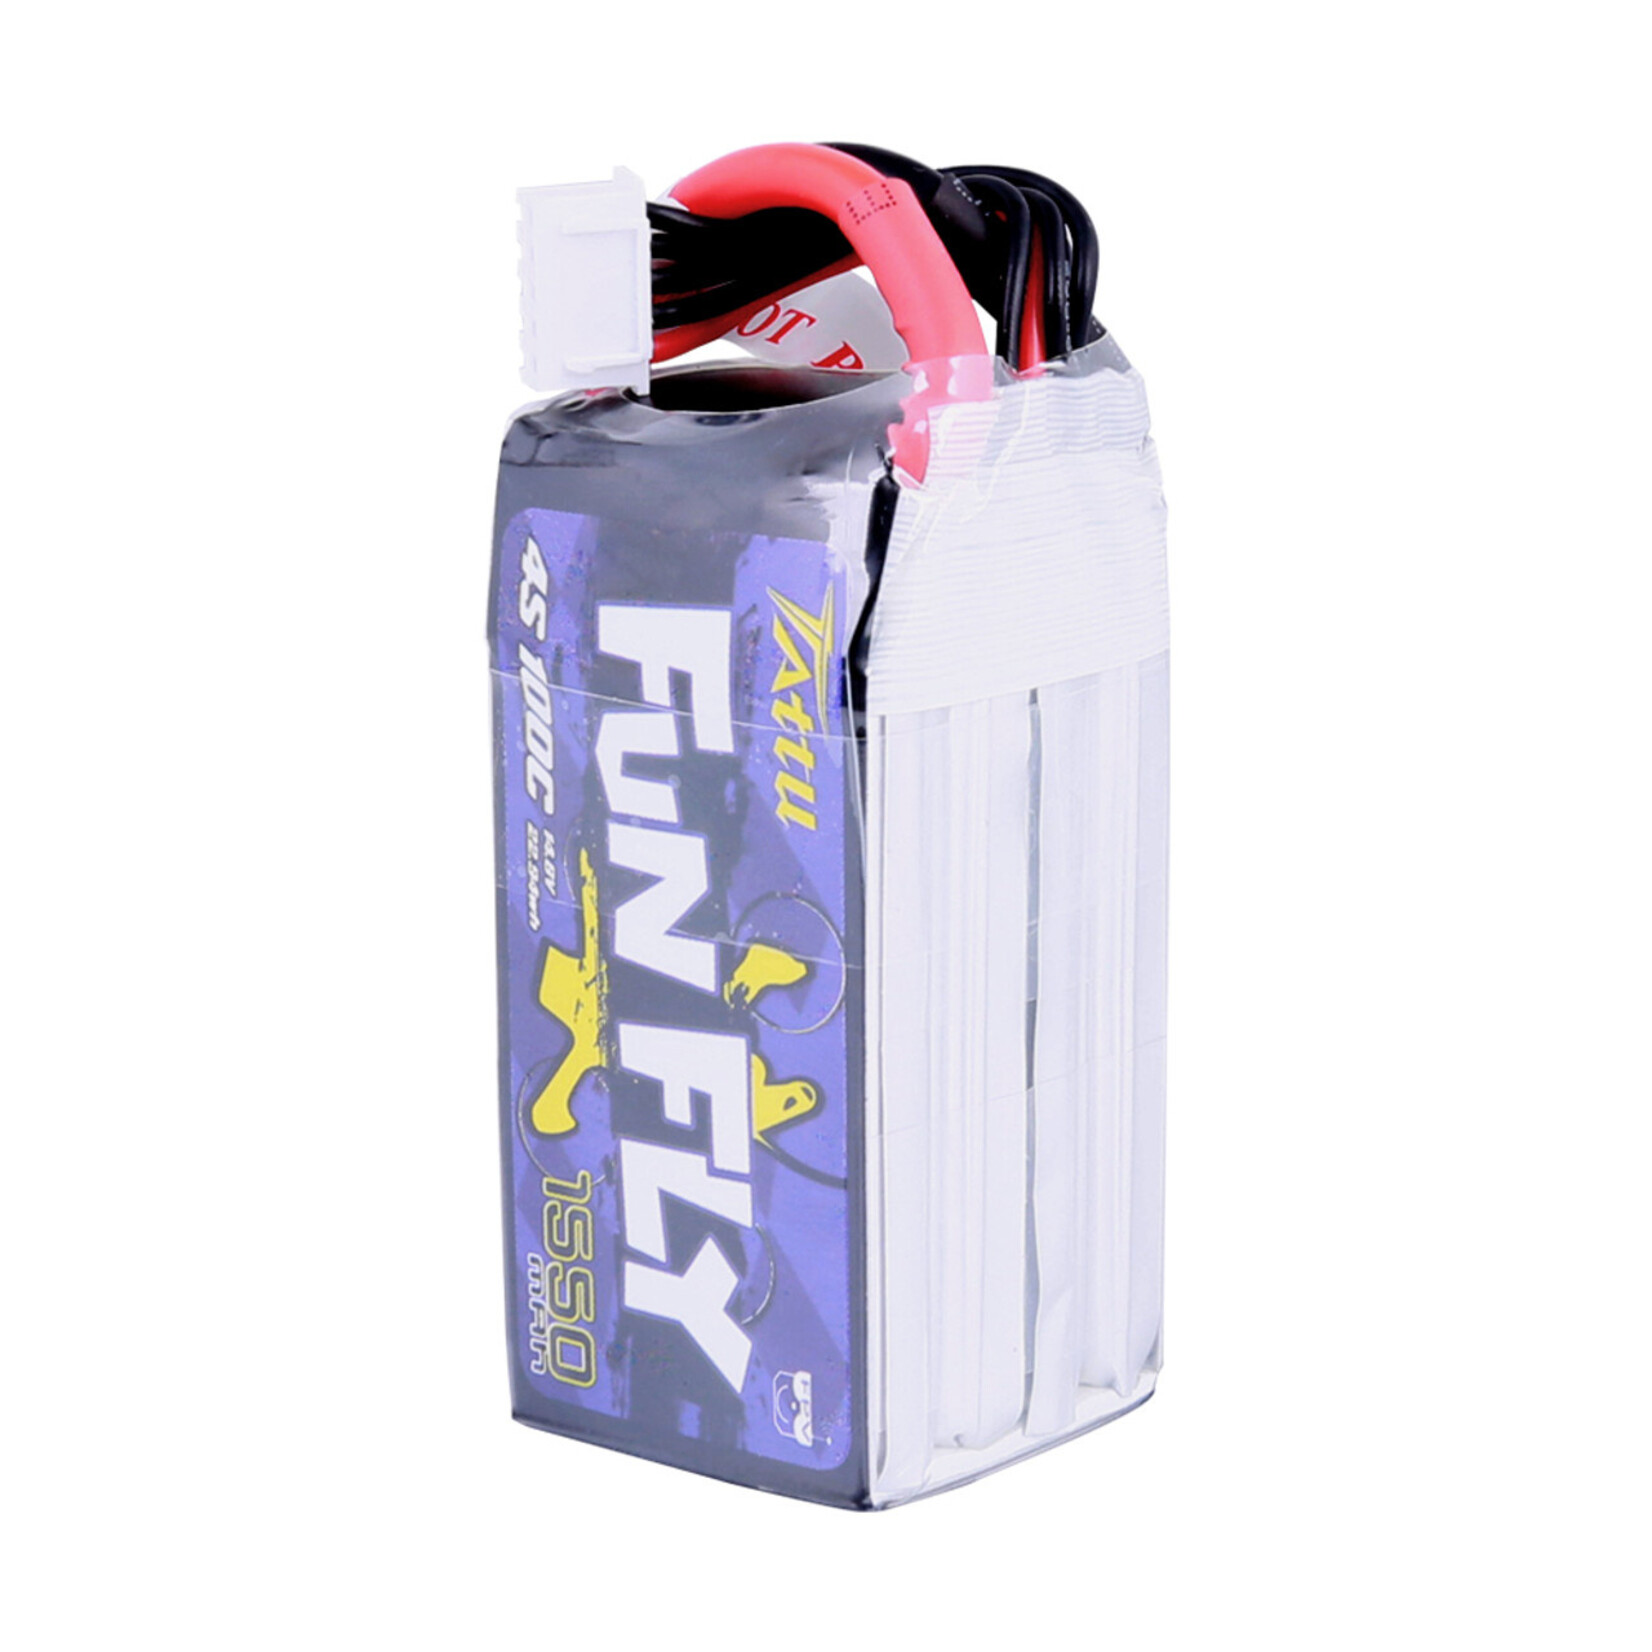 Tattu Tattu FunFly 4S LiPo Battery 100C (14.8V/1550mAh) (JST-XH) w/XT-60 Connector #TA-FF-100C-1550-4S1P